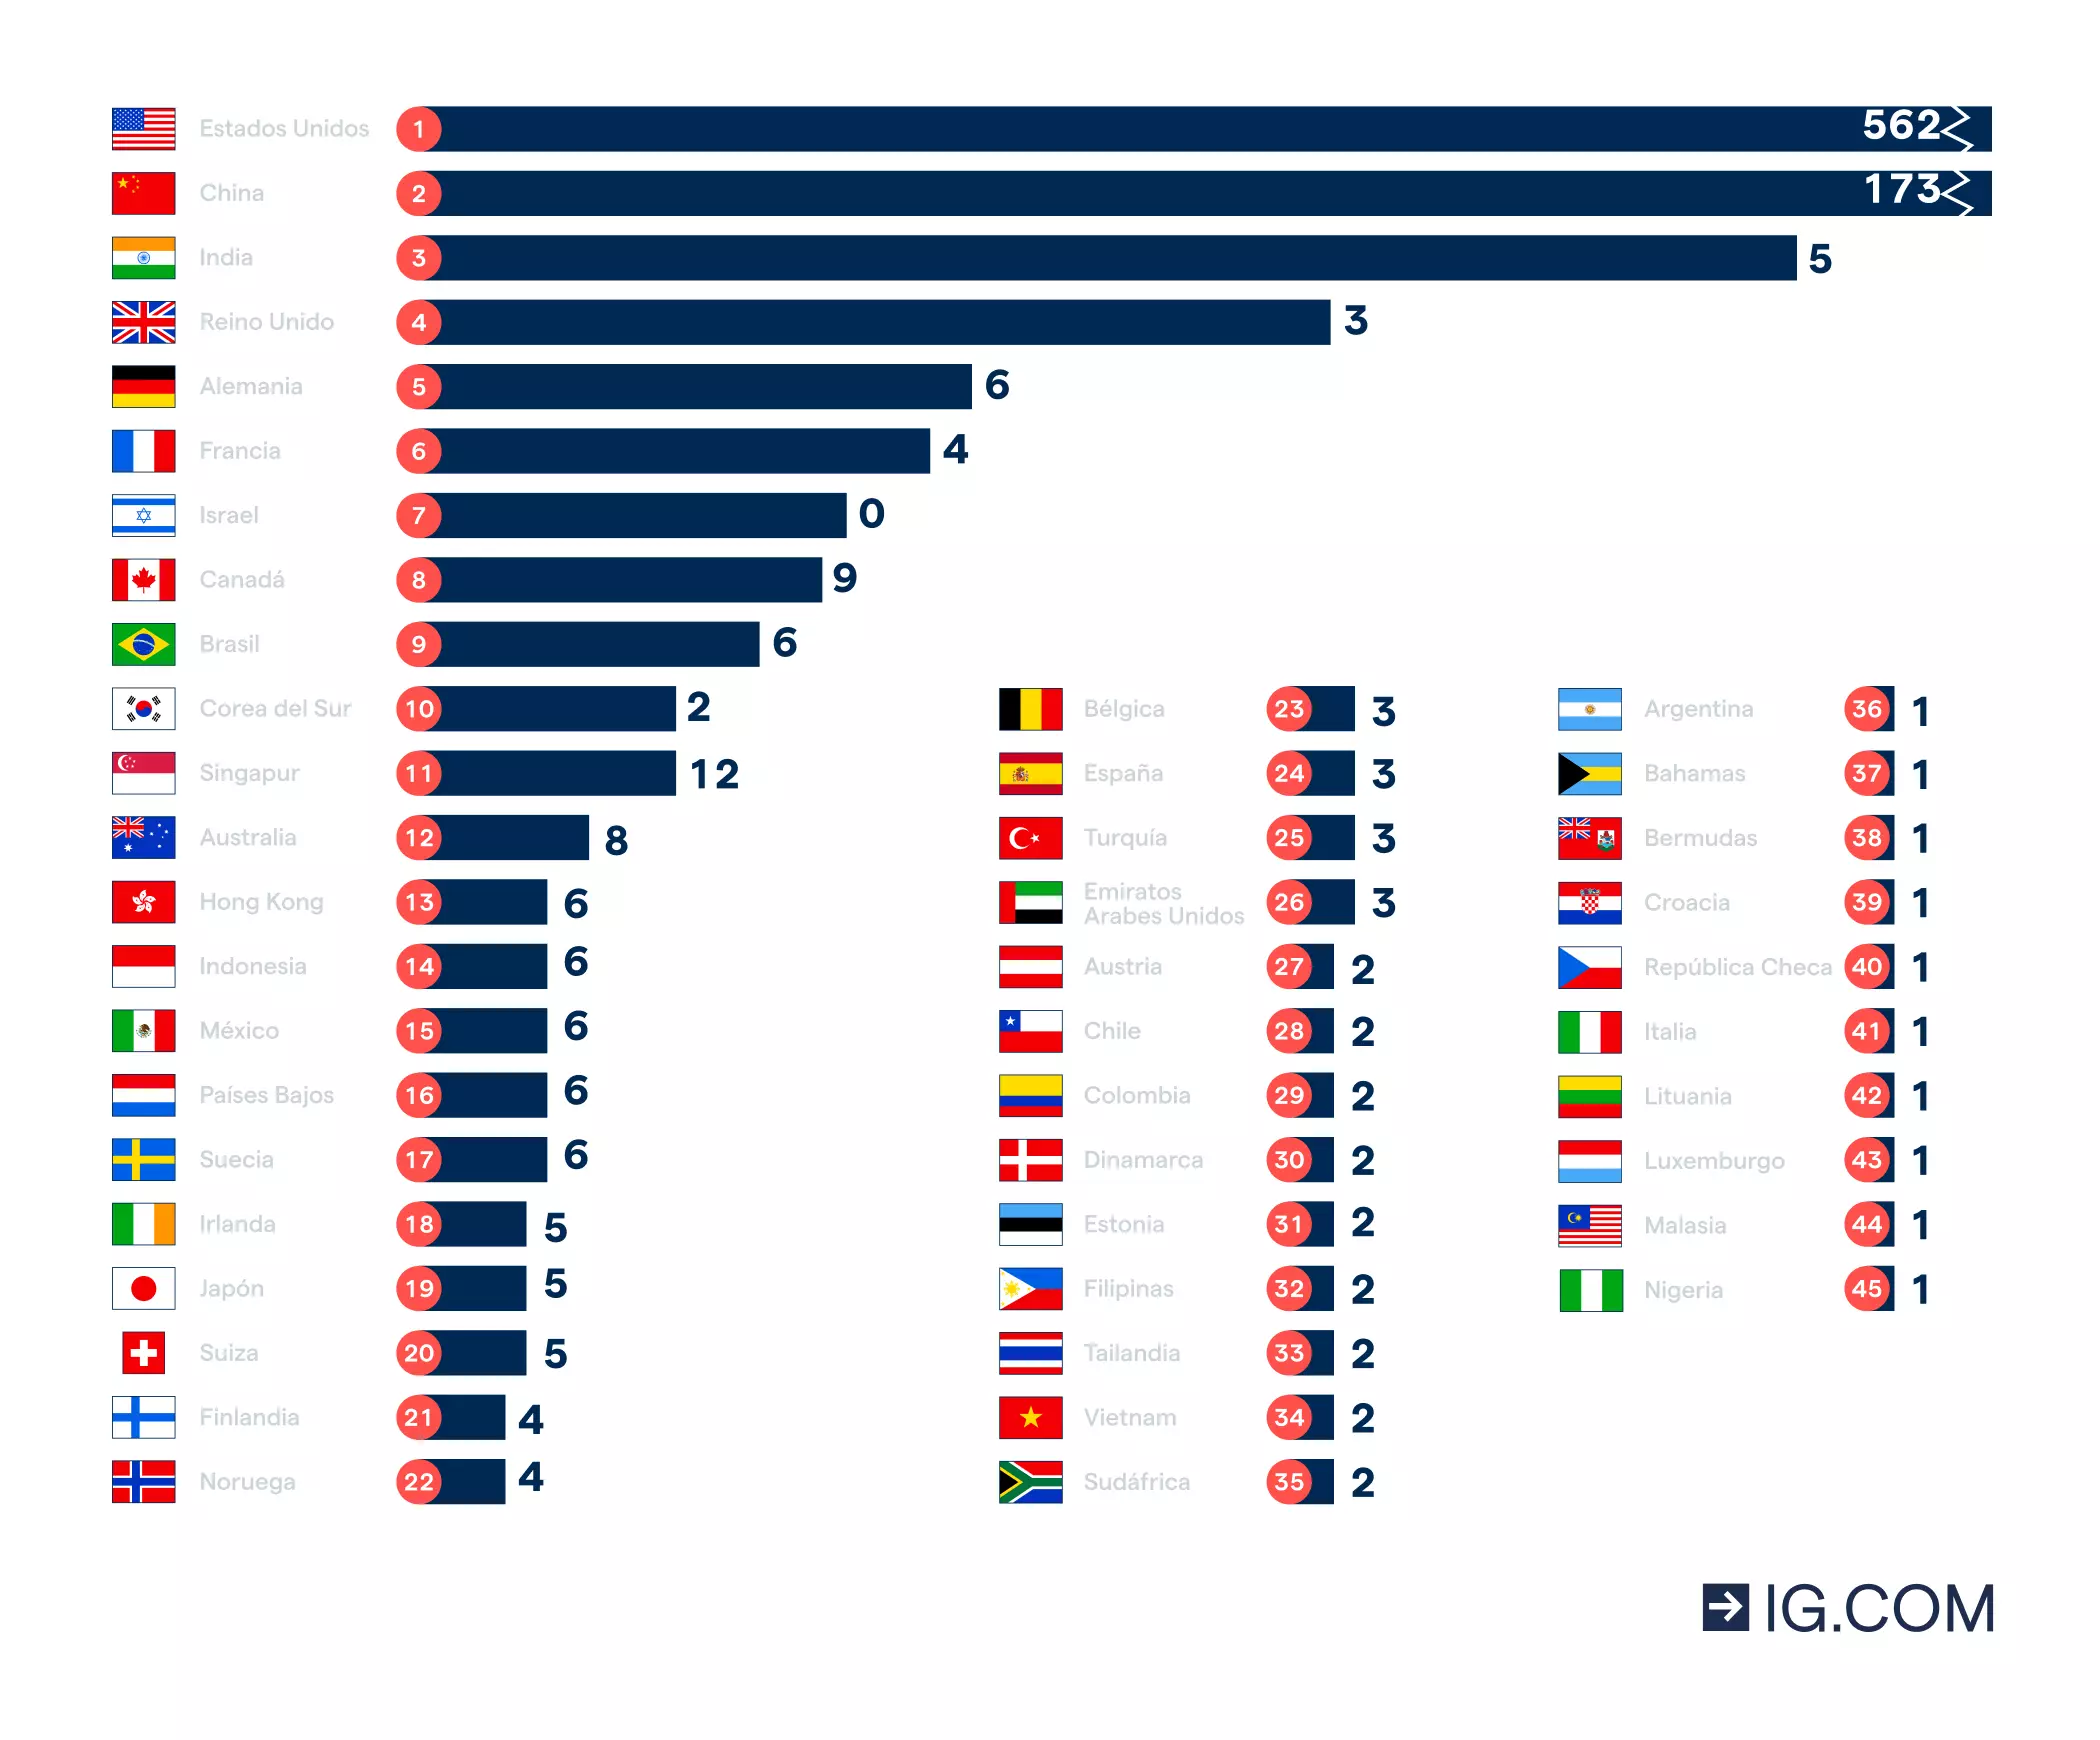 Países con el mayor número de empresas unicornio (2022).